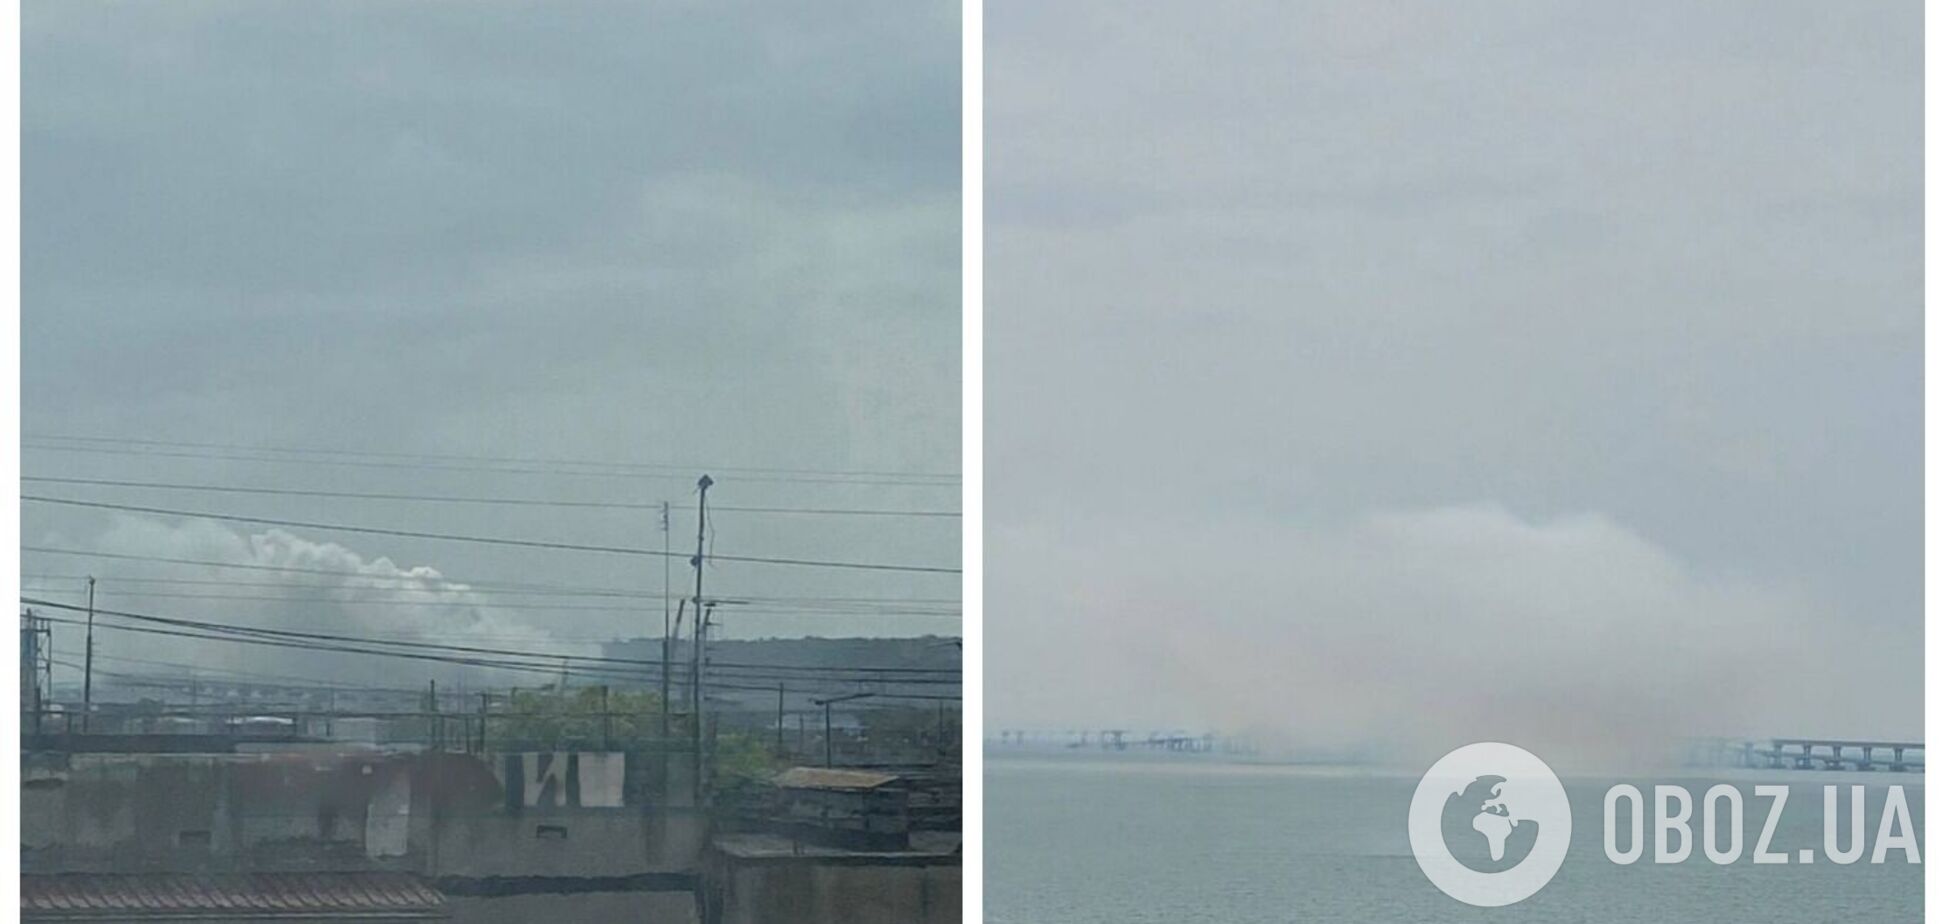 Над Кримським мостом помітили дим, рух перекрито: що відбувається і чому в російських пропагандистів істерика. Фото і відео 